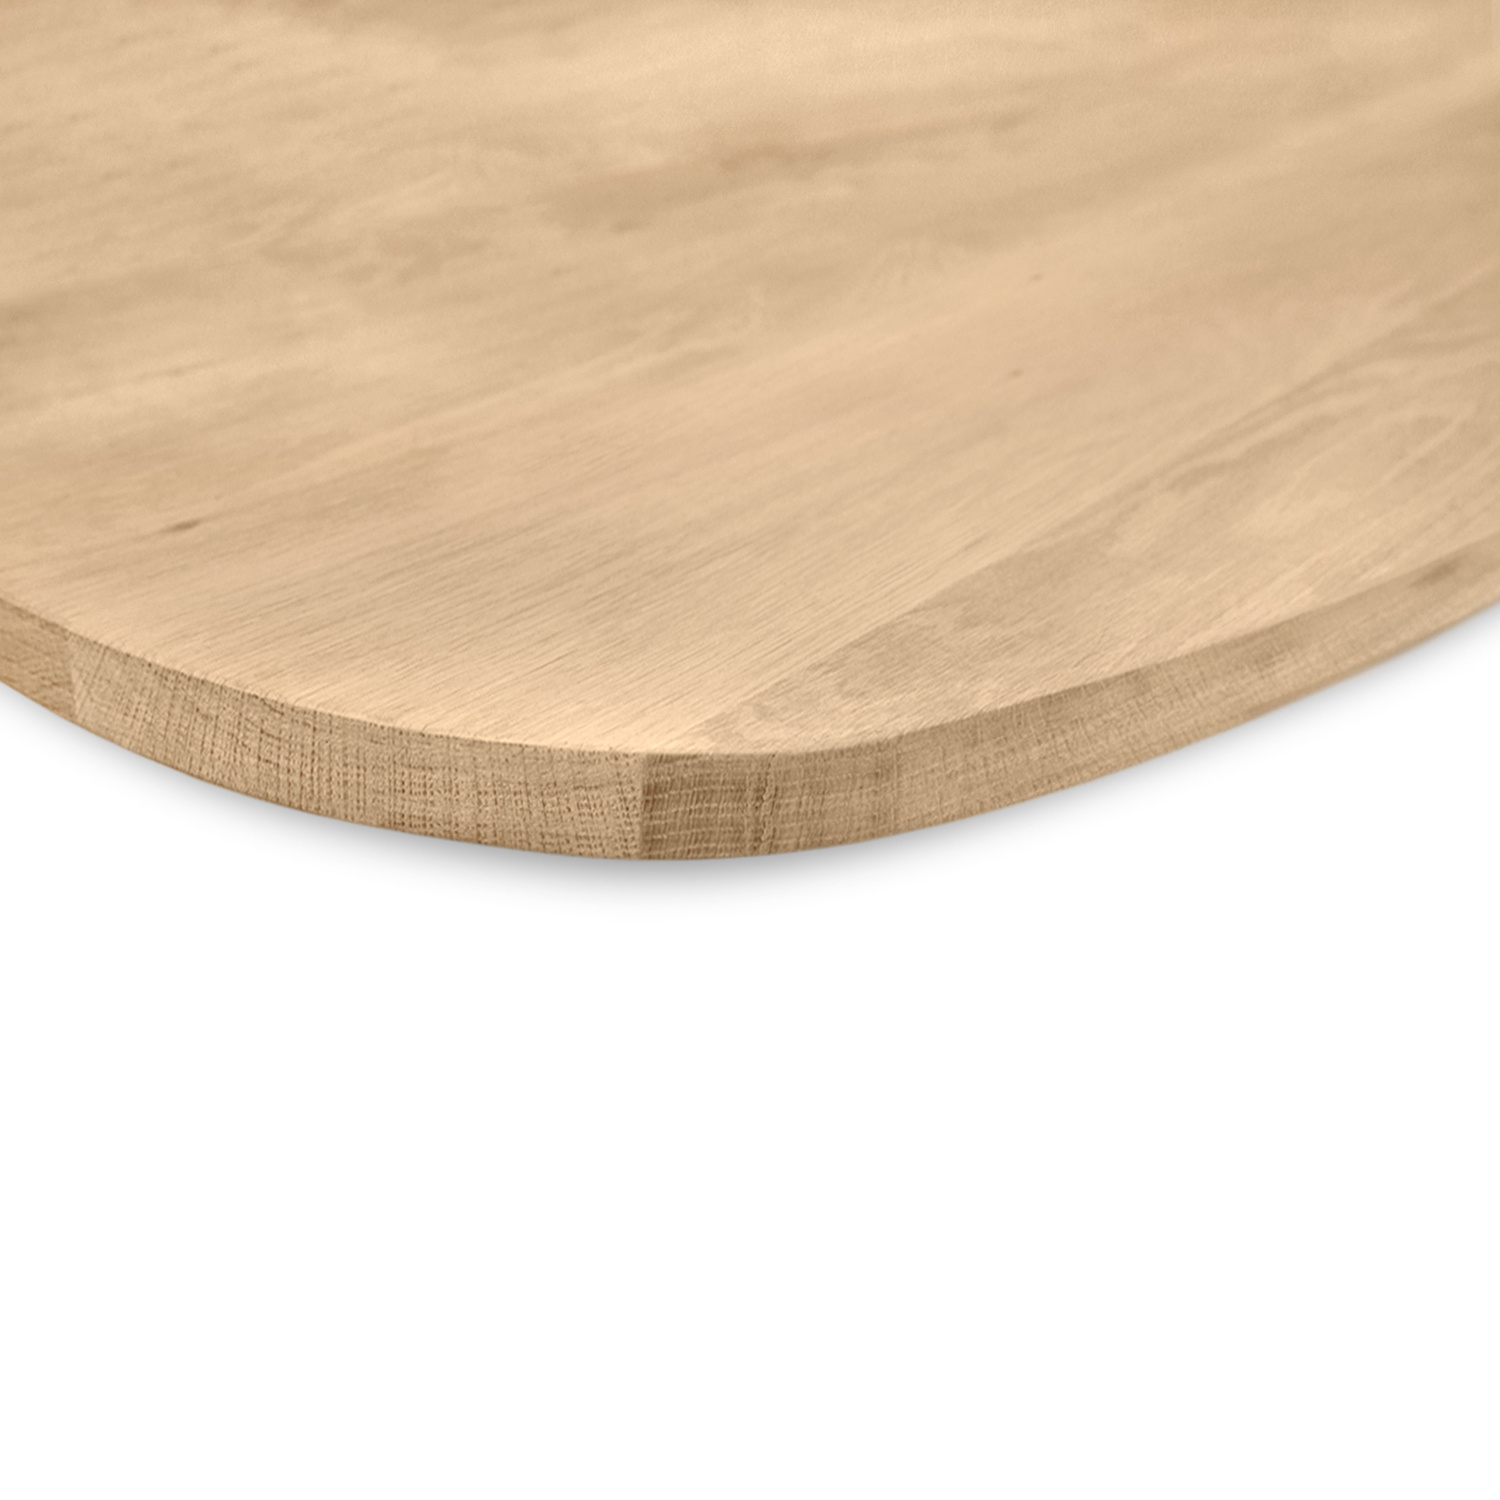  Deens ovaal eiken tafelblad op maat - 3 cm dik (1-laag) - extra rustiek Europees eikenhout - met extra brede lamellen (circa 14-20 cm)nhout - verlijmd kd 8-12% - 40-117x80-247 cm